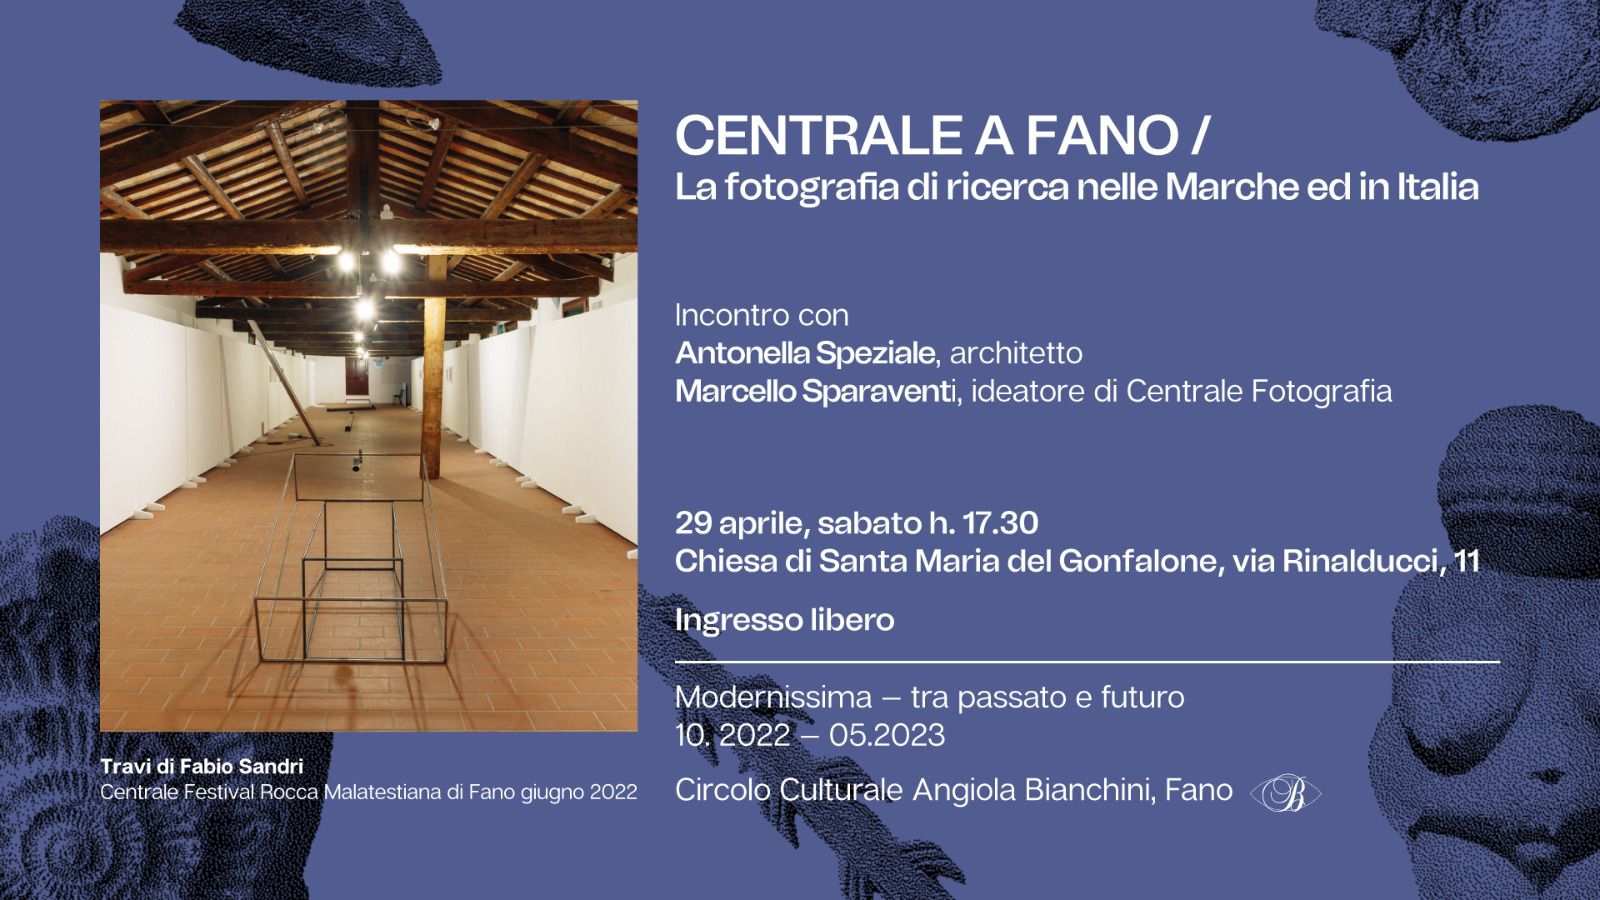 Centrale a Fano / La fotografia di ricerca nelle Marche ed in Italia